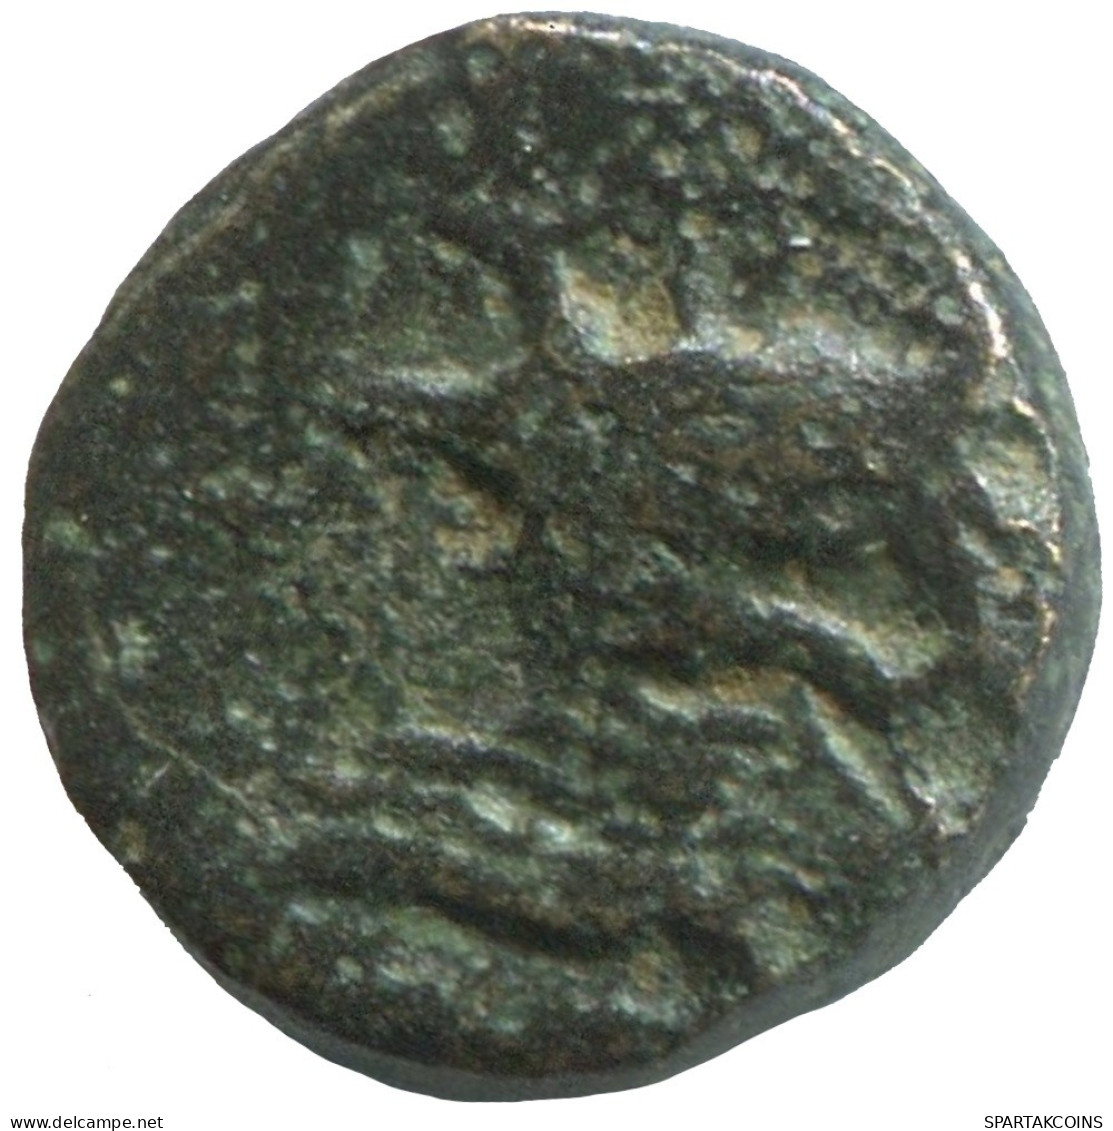 Ancient Antike Authentische Original GRIECHISCHE Münze 1.3g/10mm #SAV1319.11.D.A - Greek